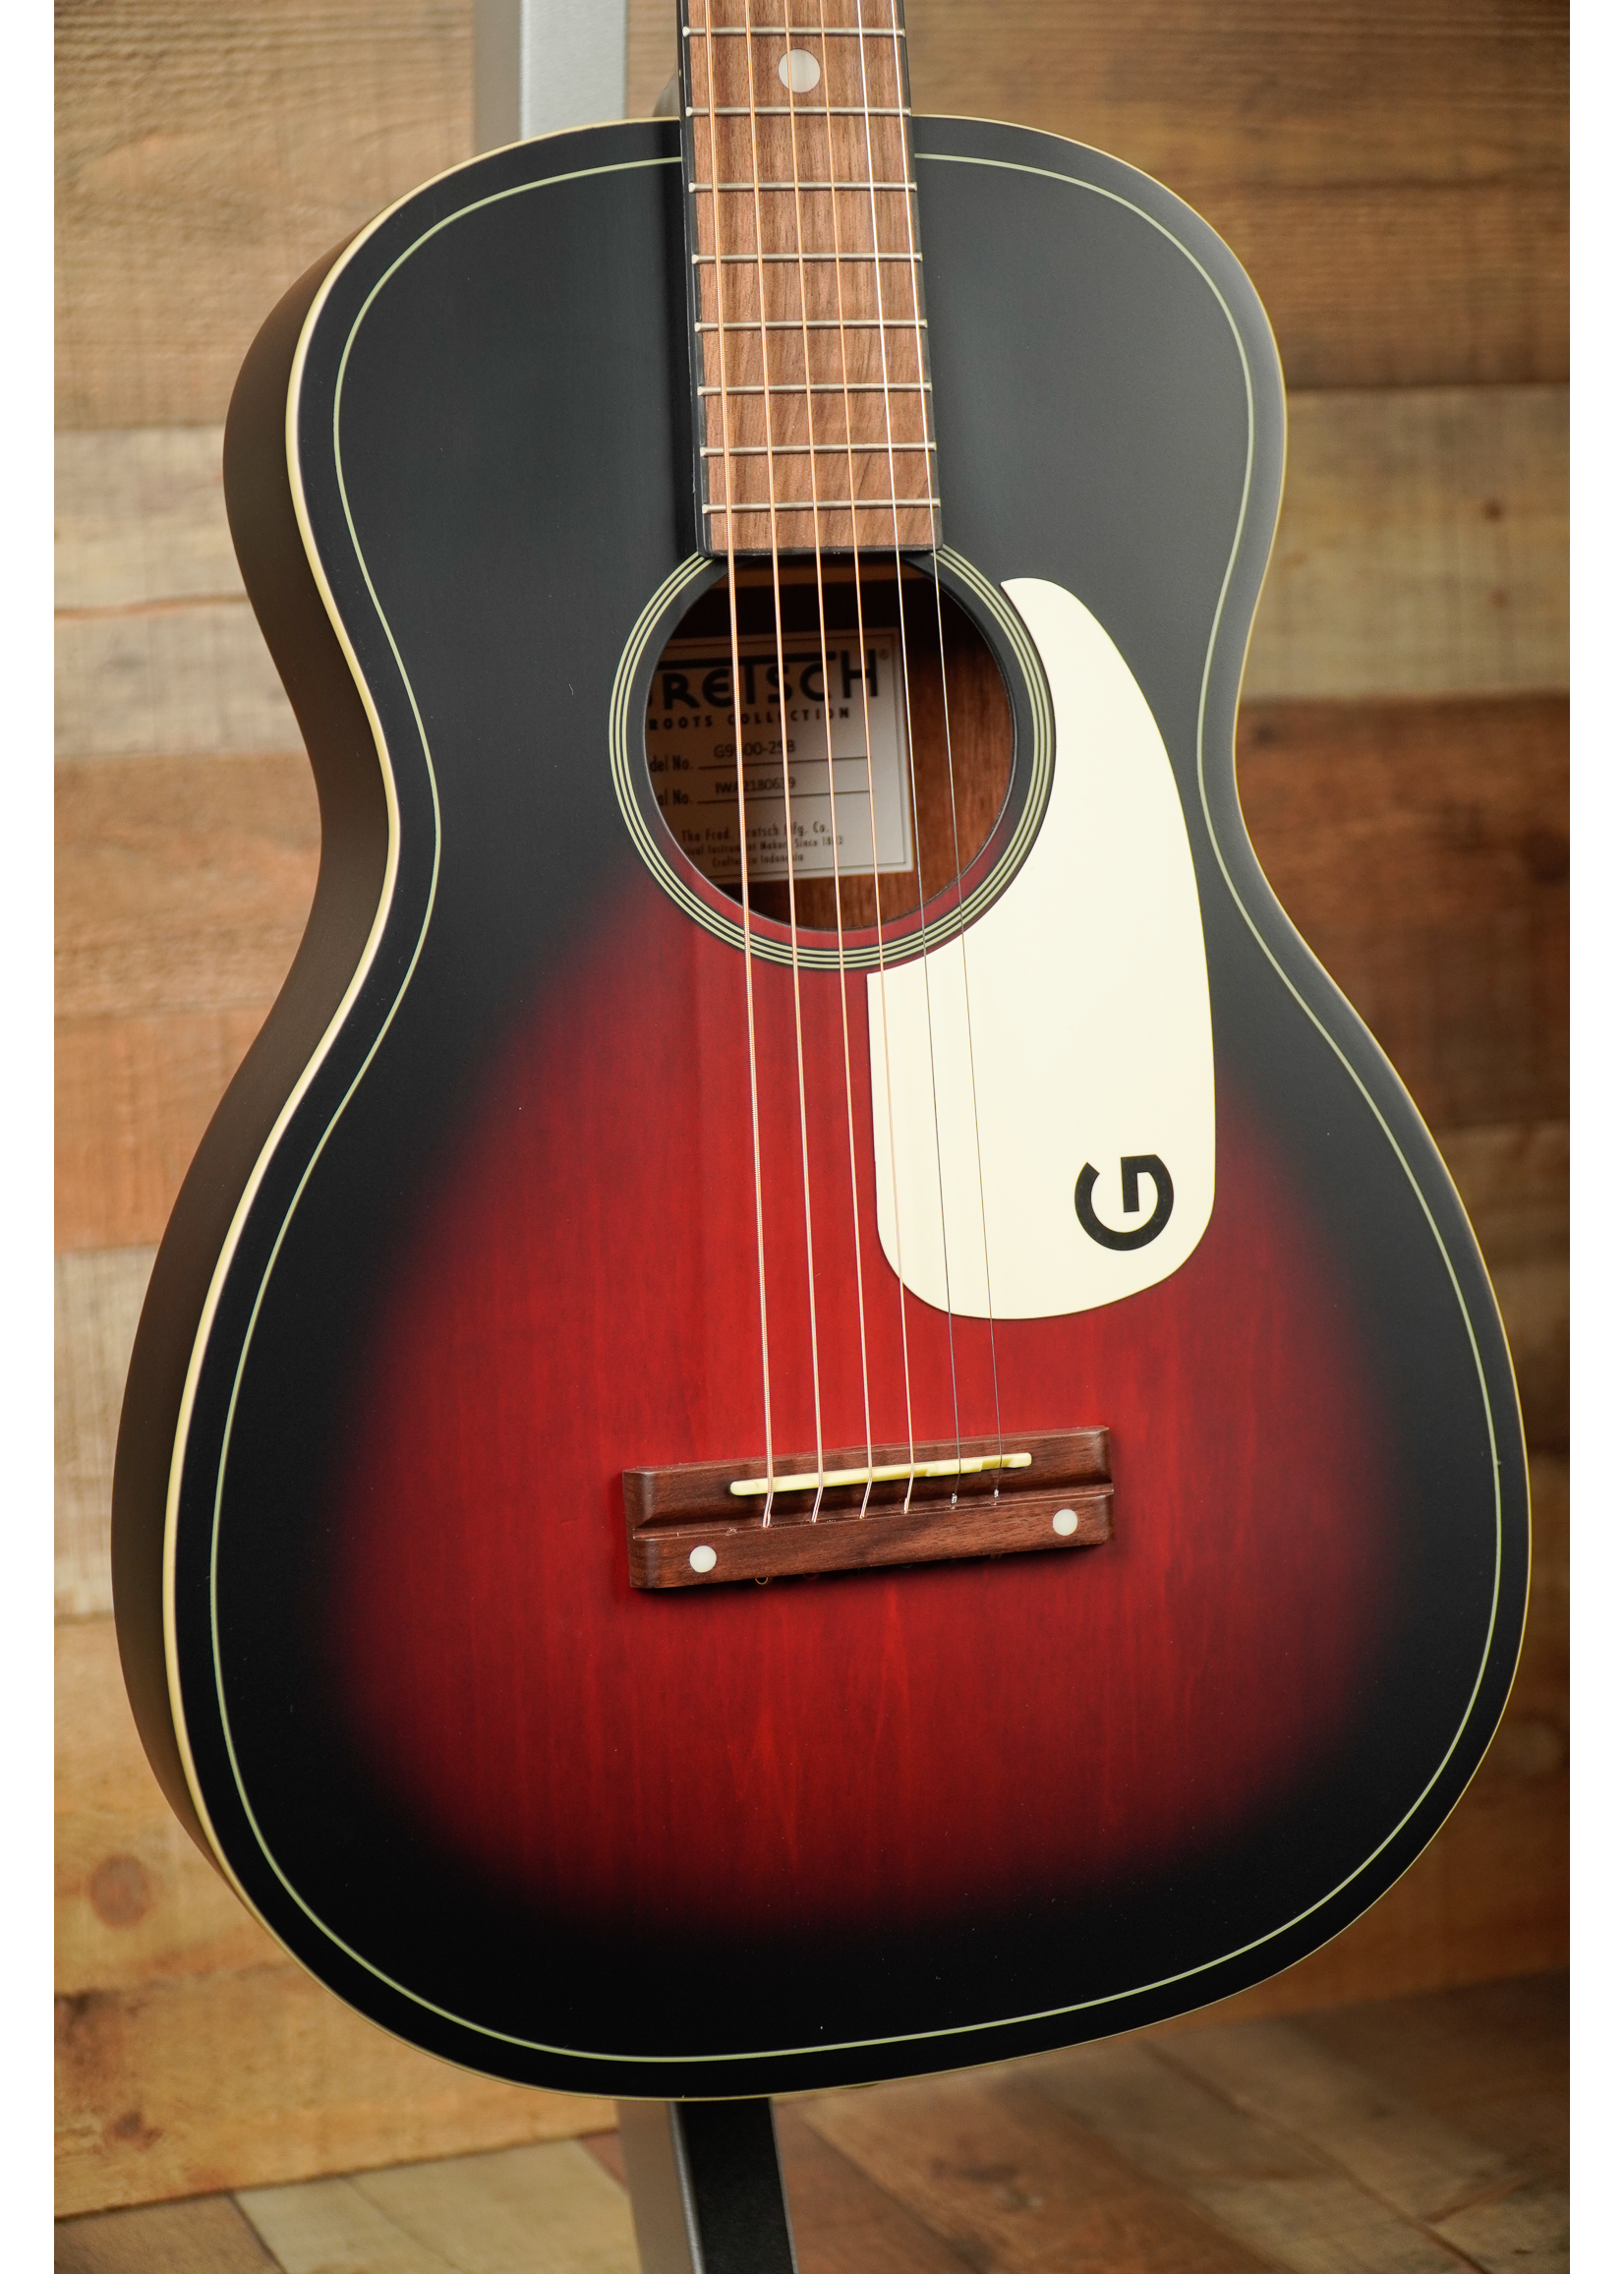 Gretsch Gretsch G9500 Jim Dandy™ 24" Scale Flat Top Guitar, 2-Color Sunburst